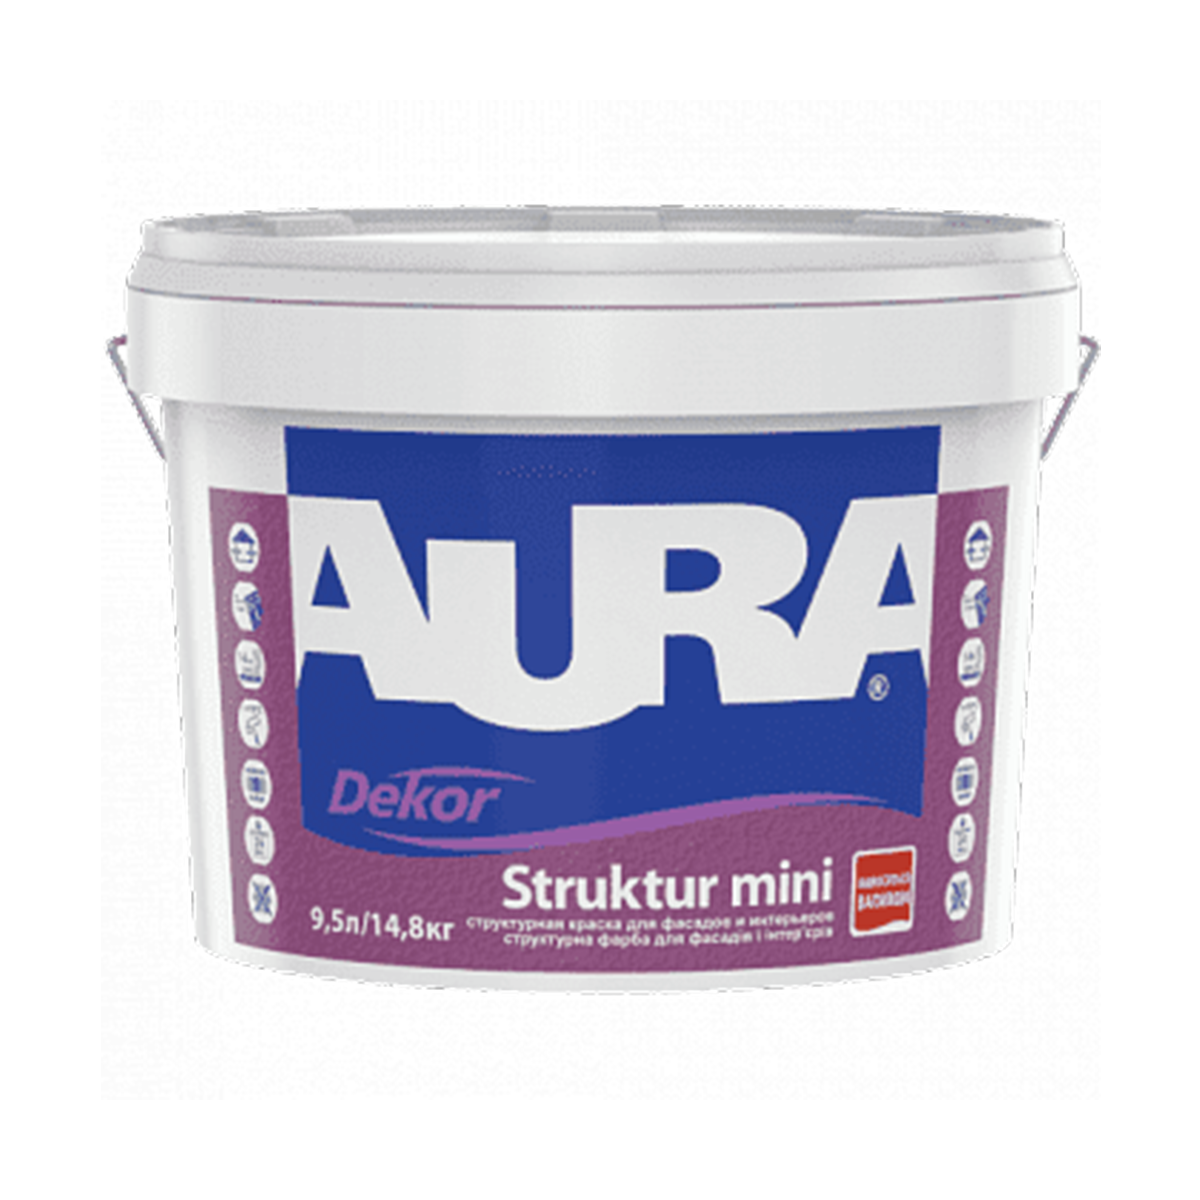 Структурна фарба для фасадів та інтер'єрів Aura Dekor Struktur mini 9.5л